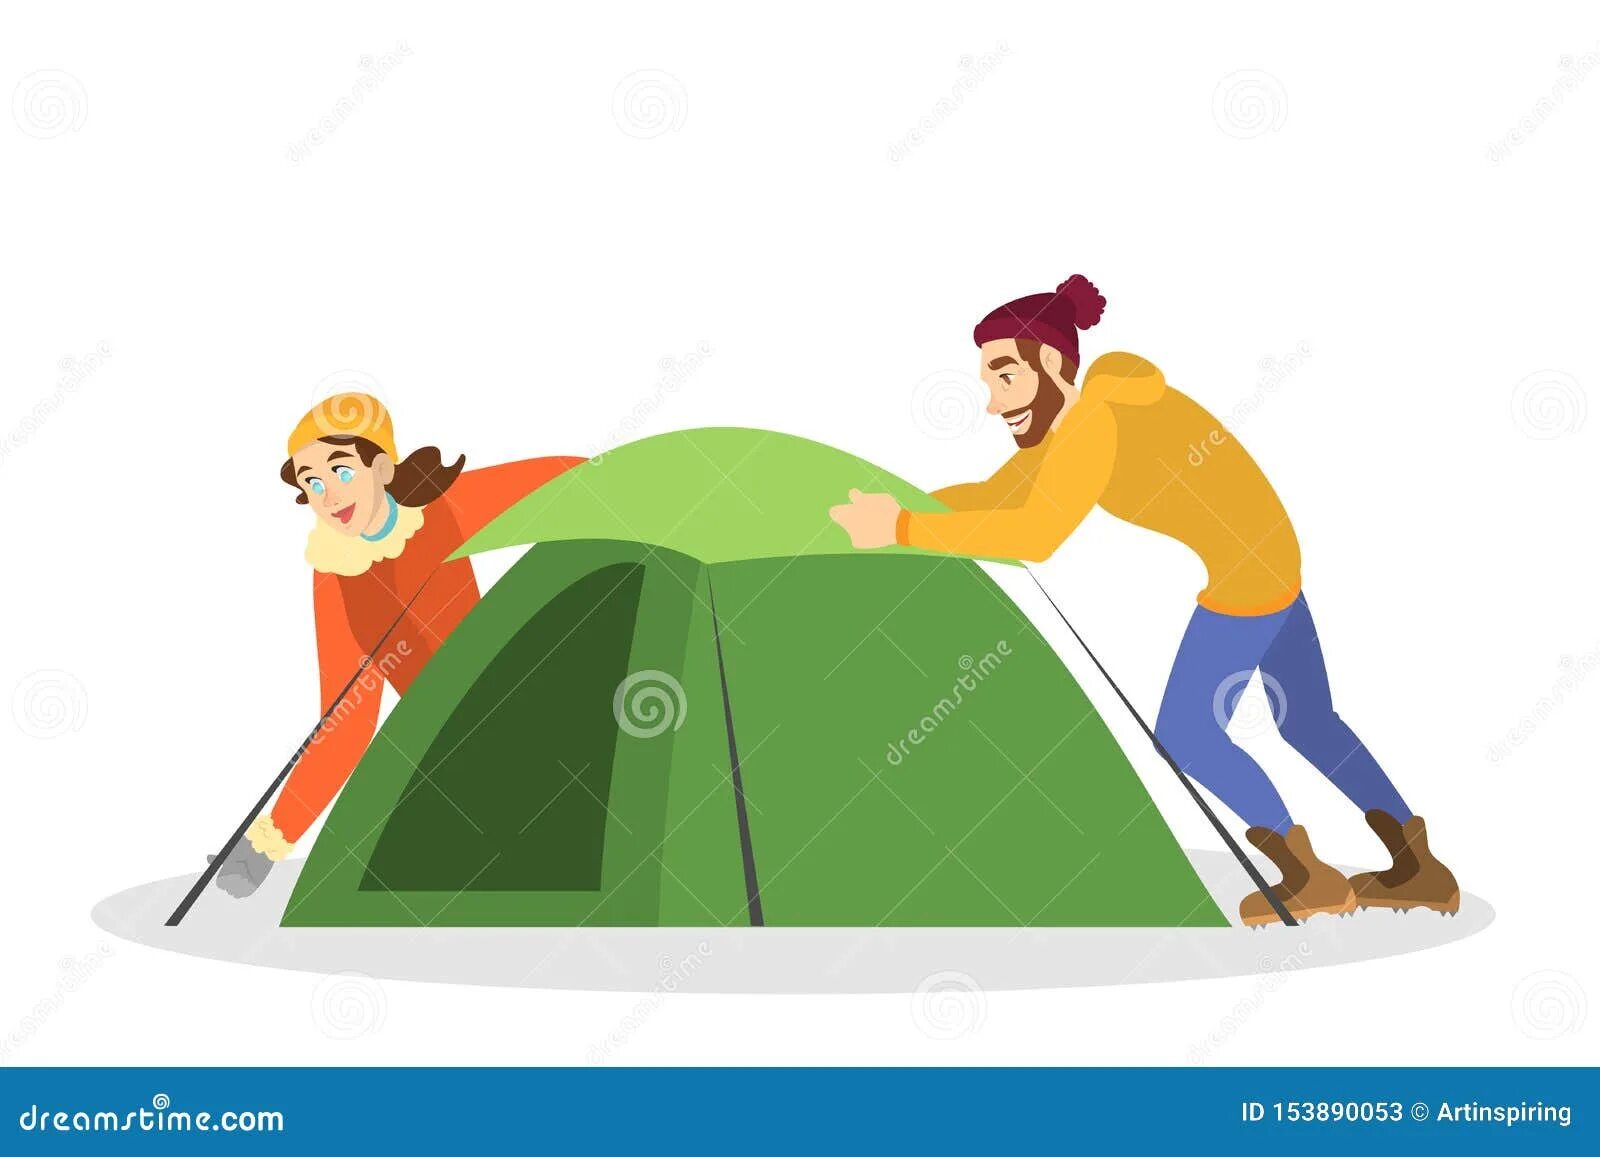 Палатка рисунок для детей. Человек ставит палатку. Установка палаток дети. Рисунок для детей поставили палатку.